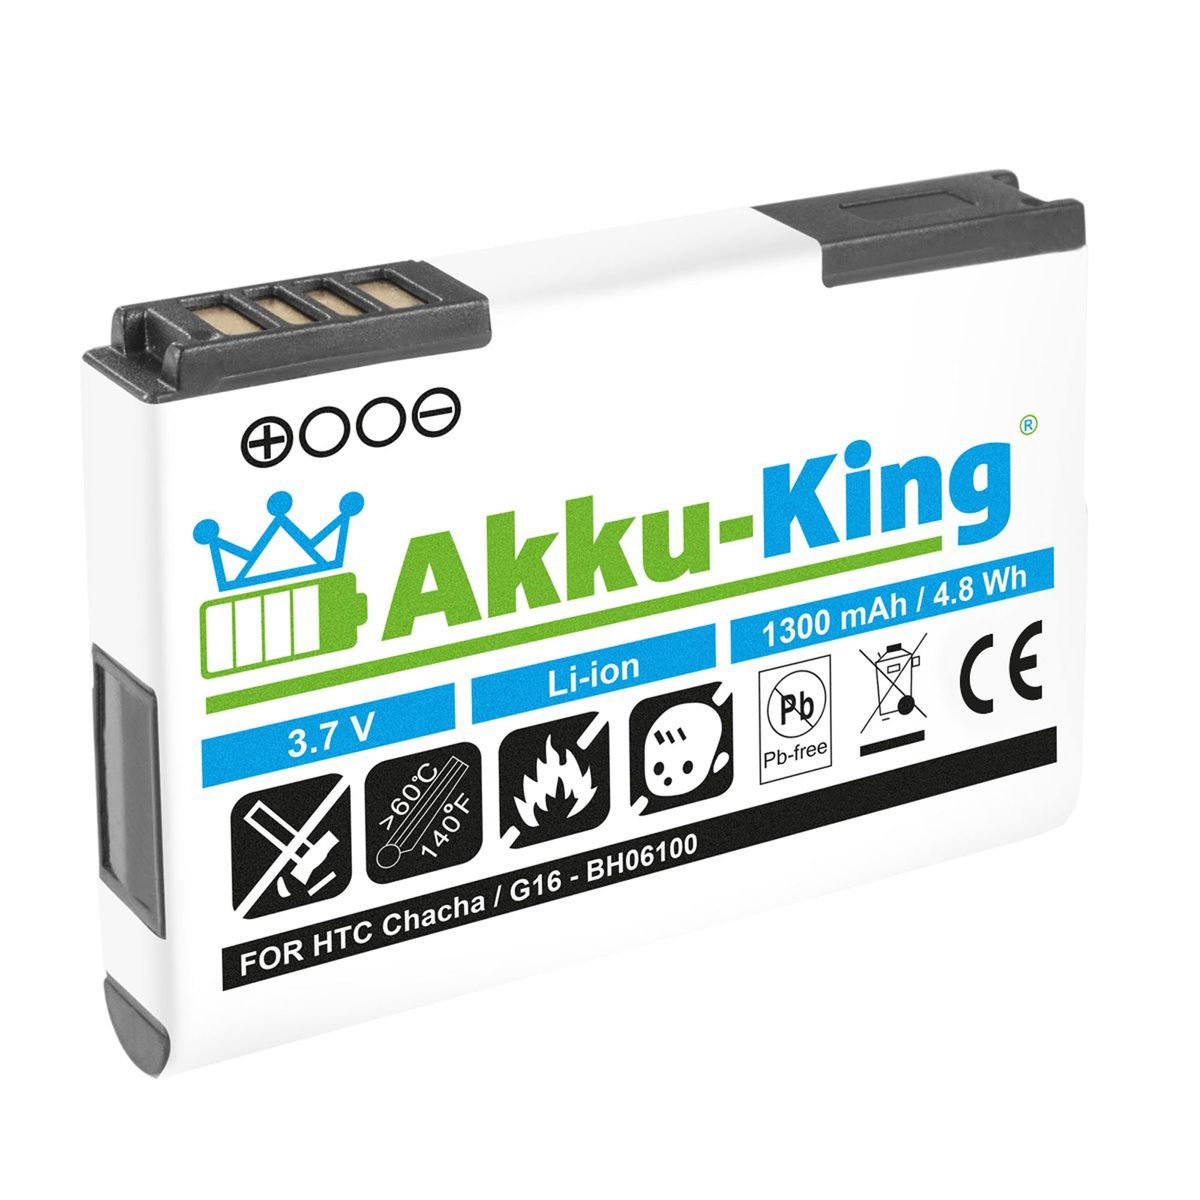 AKKU-KING Akku BA-S570 Handy-Akku, Volt, HTC mit 3.7 kompatibel 1300mAh Li-Ion